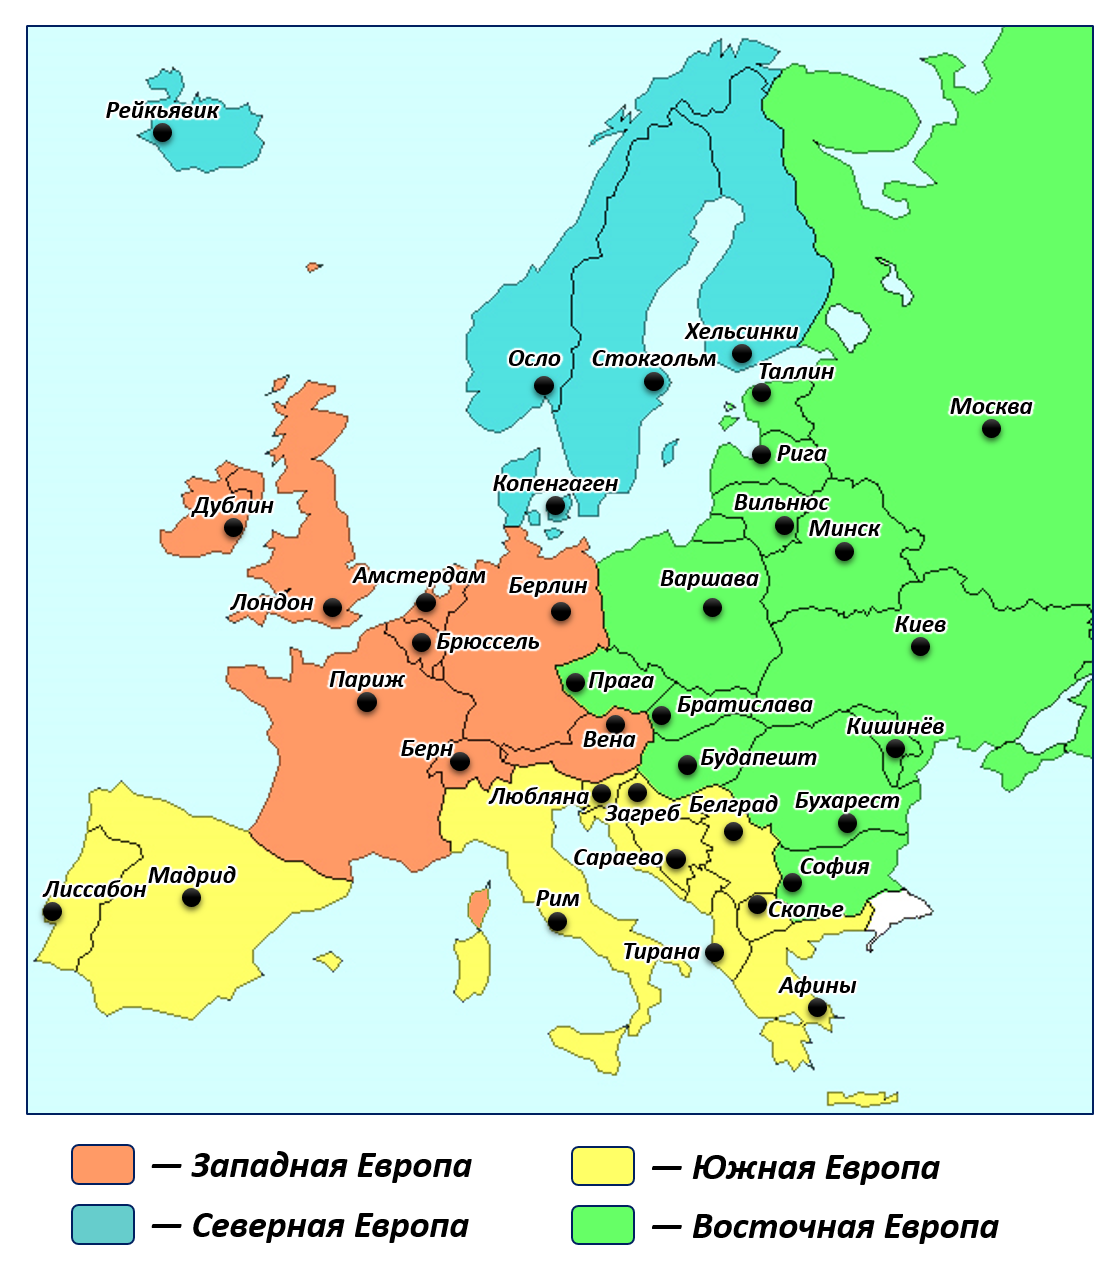 Зарубежная европа находится. Карта зарубежной Европы Северная Европа Восточная Западная Южная. Границы регионов Европы на контурной карте. Северная Европа Южная Европа Западная Европа Восточная Европа карта. Границы регионов зарубежной Европы на карте.